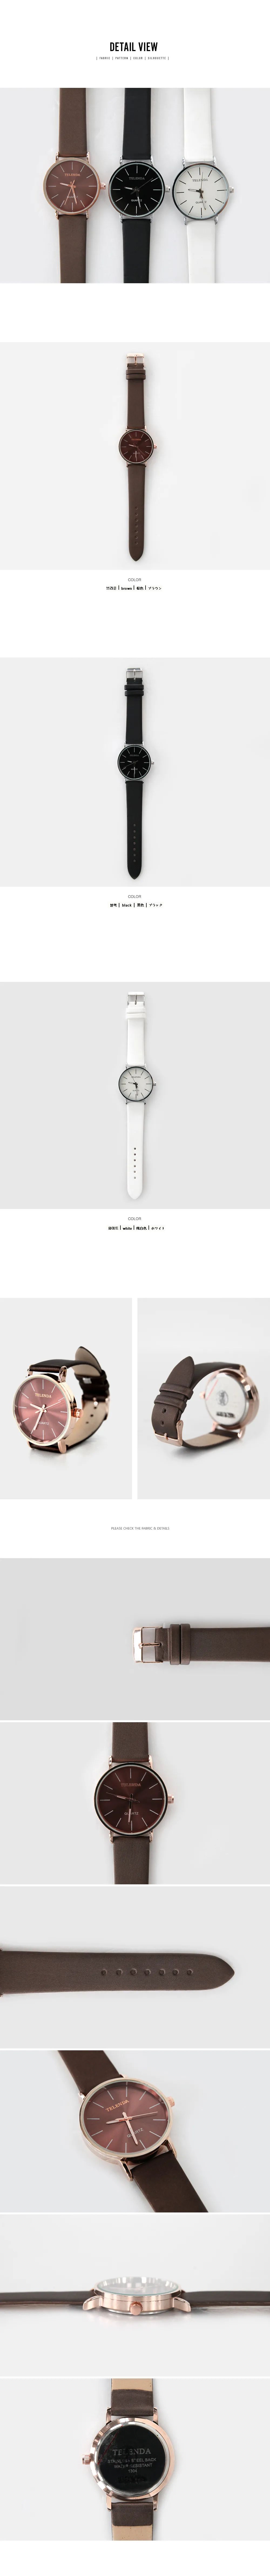 1304フェイクレザー腕時計・全3色 | 詳細画像3